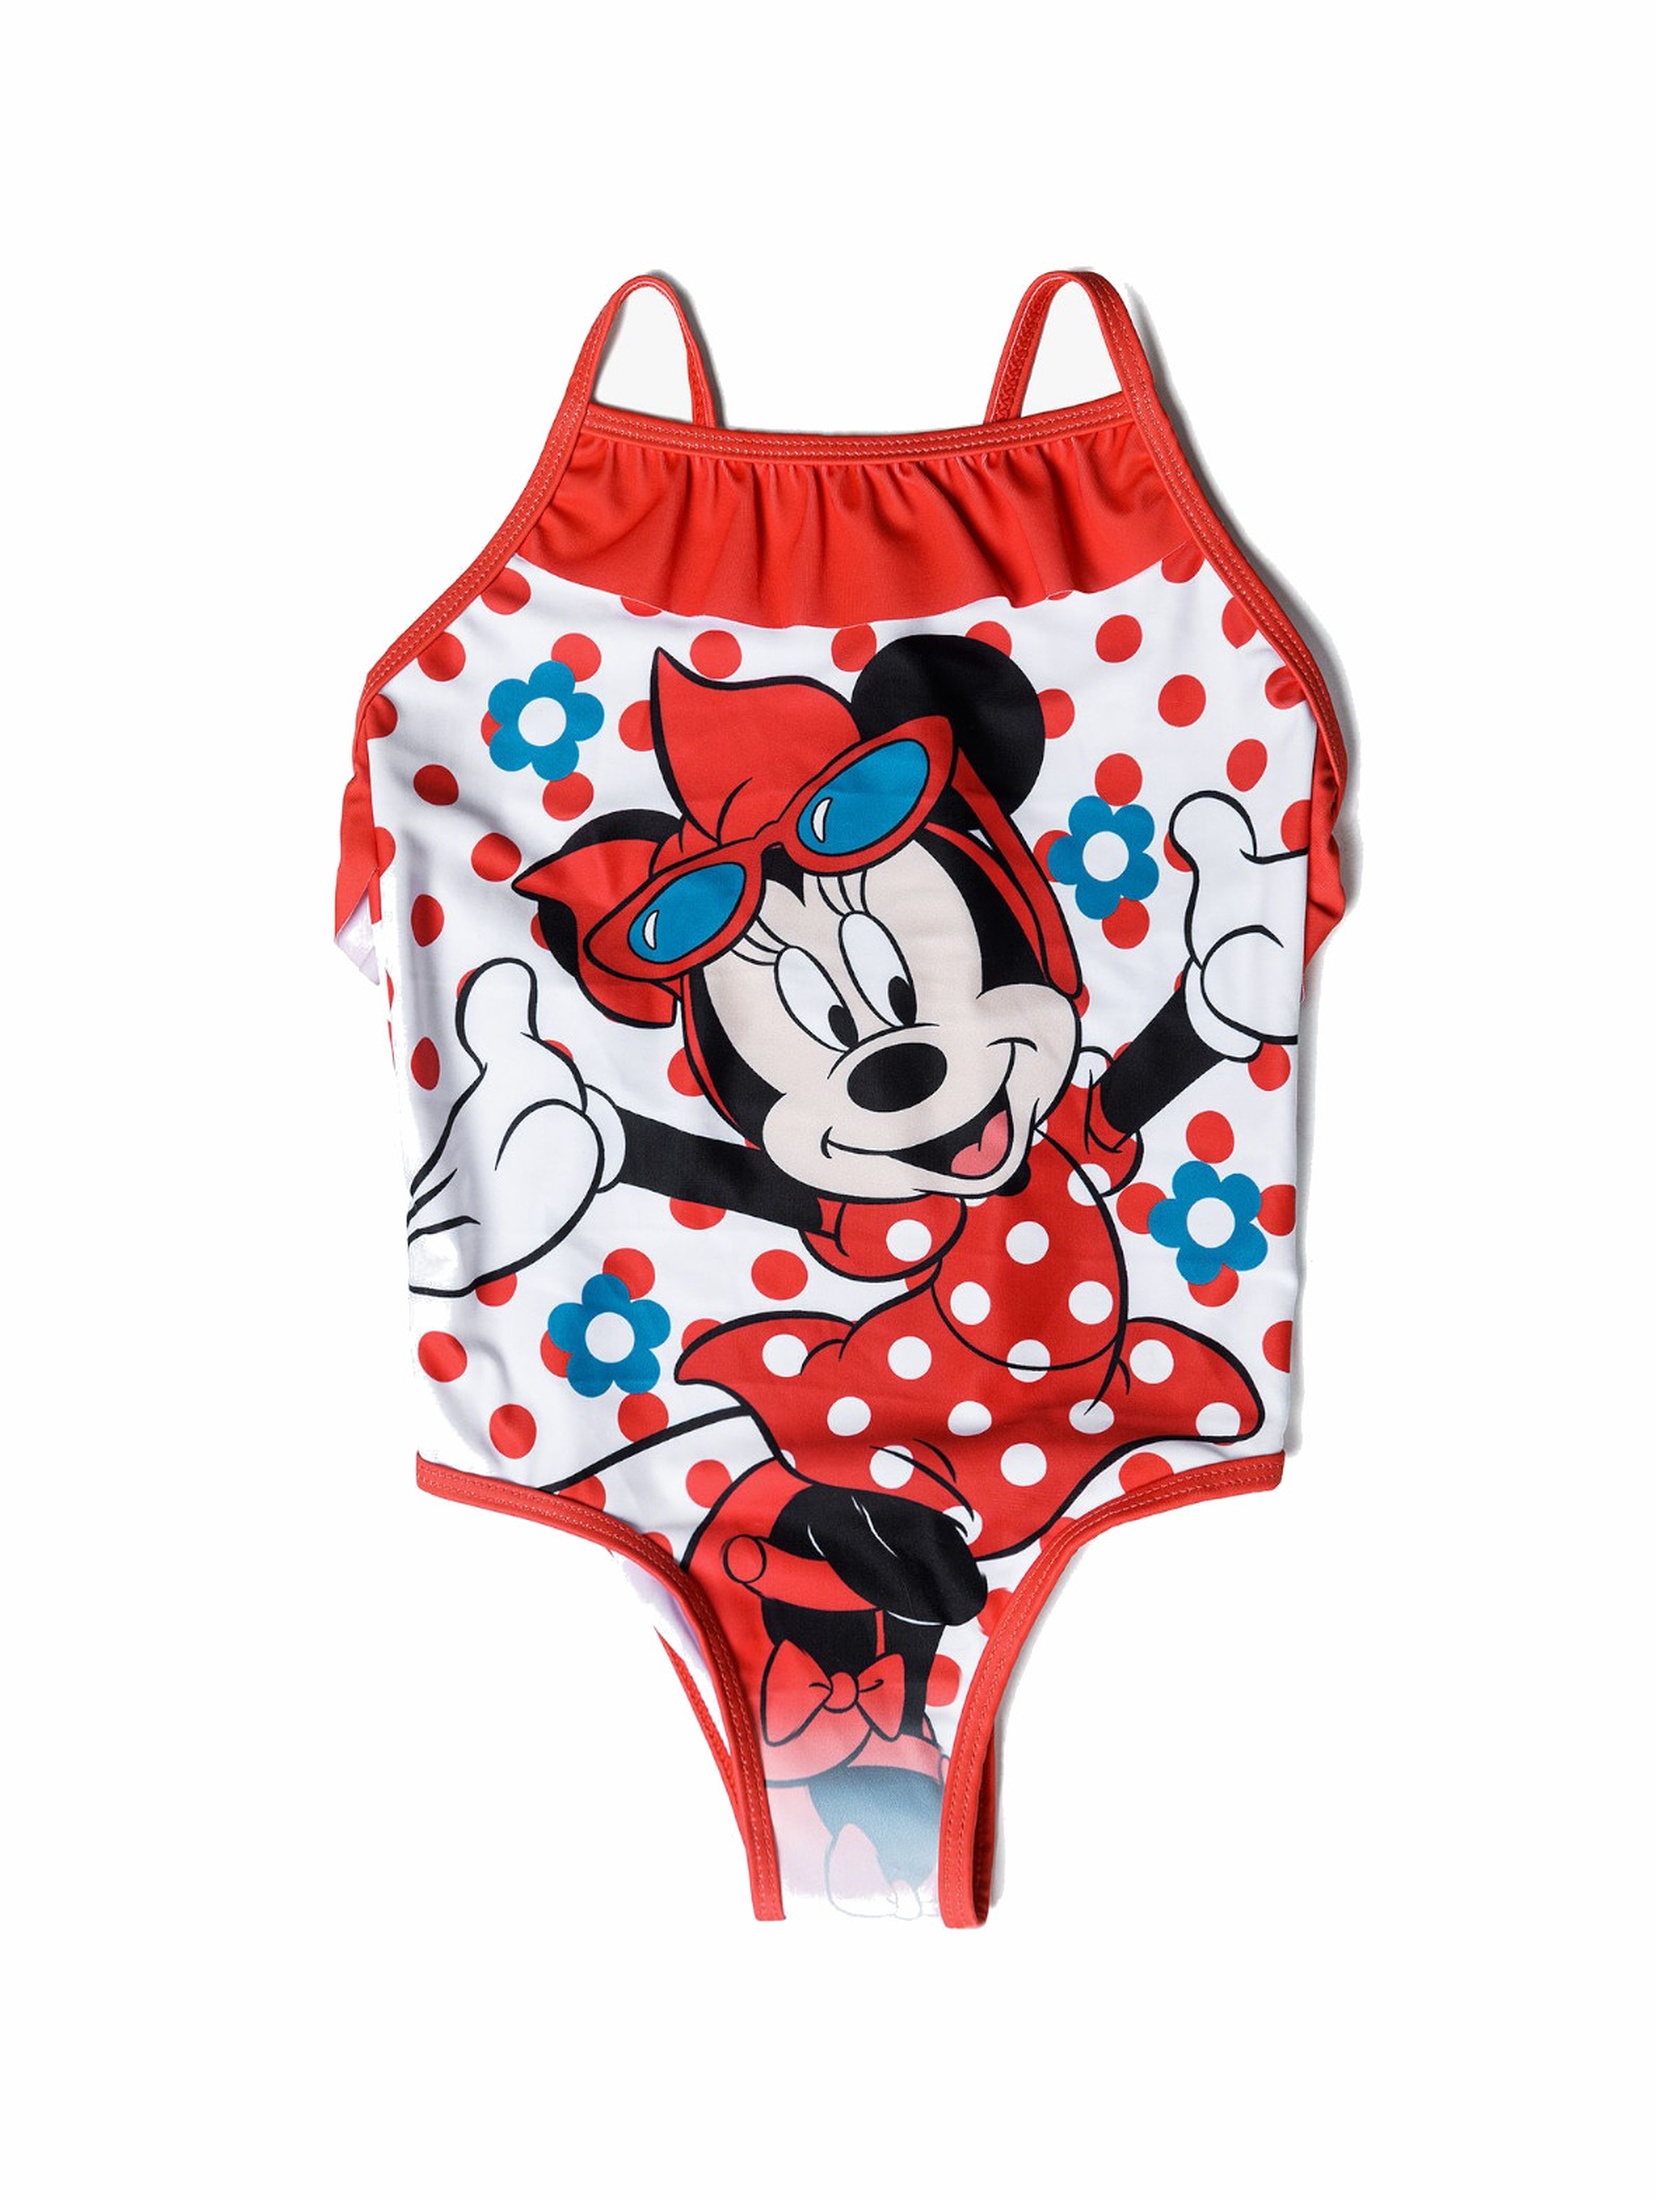 Jednoczęściowy strój kąpielowy dla dziewczynki Myszka Minnie